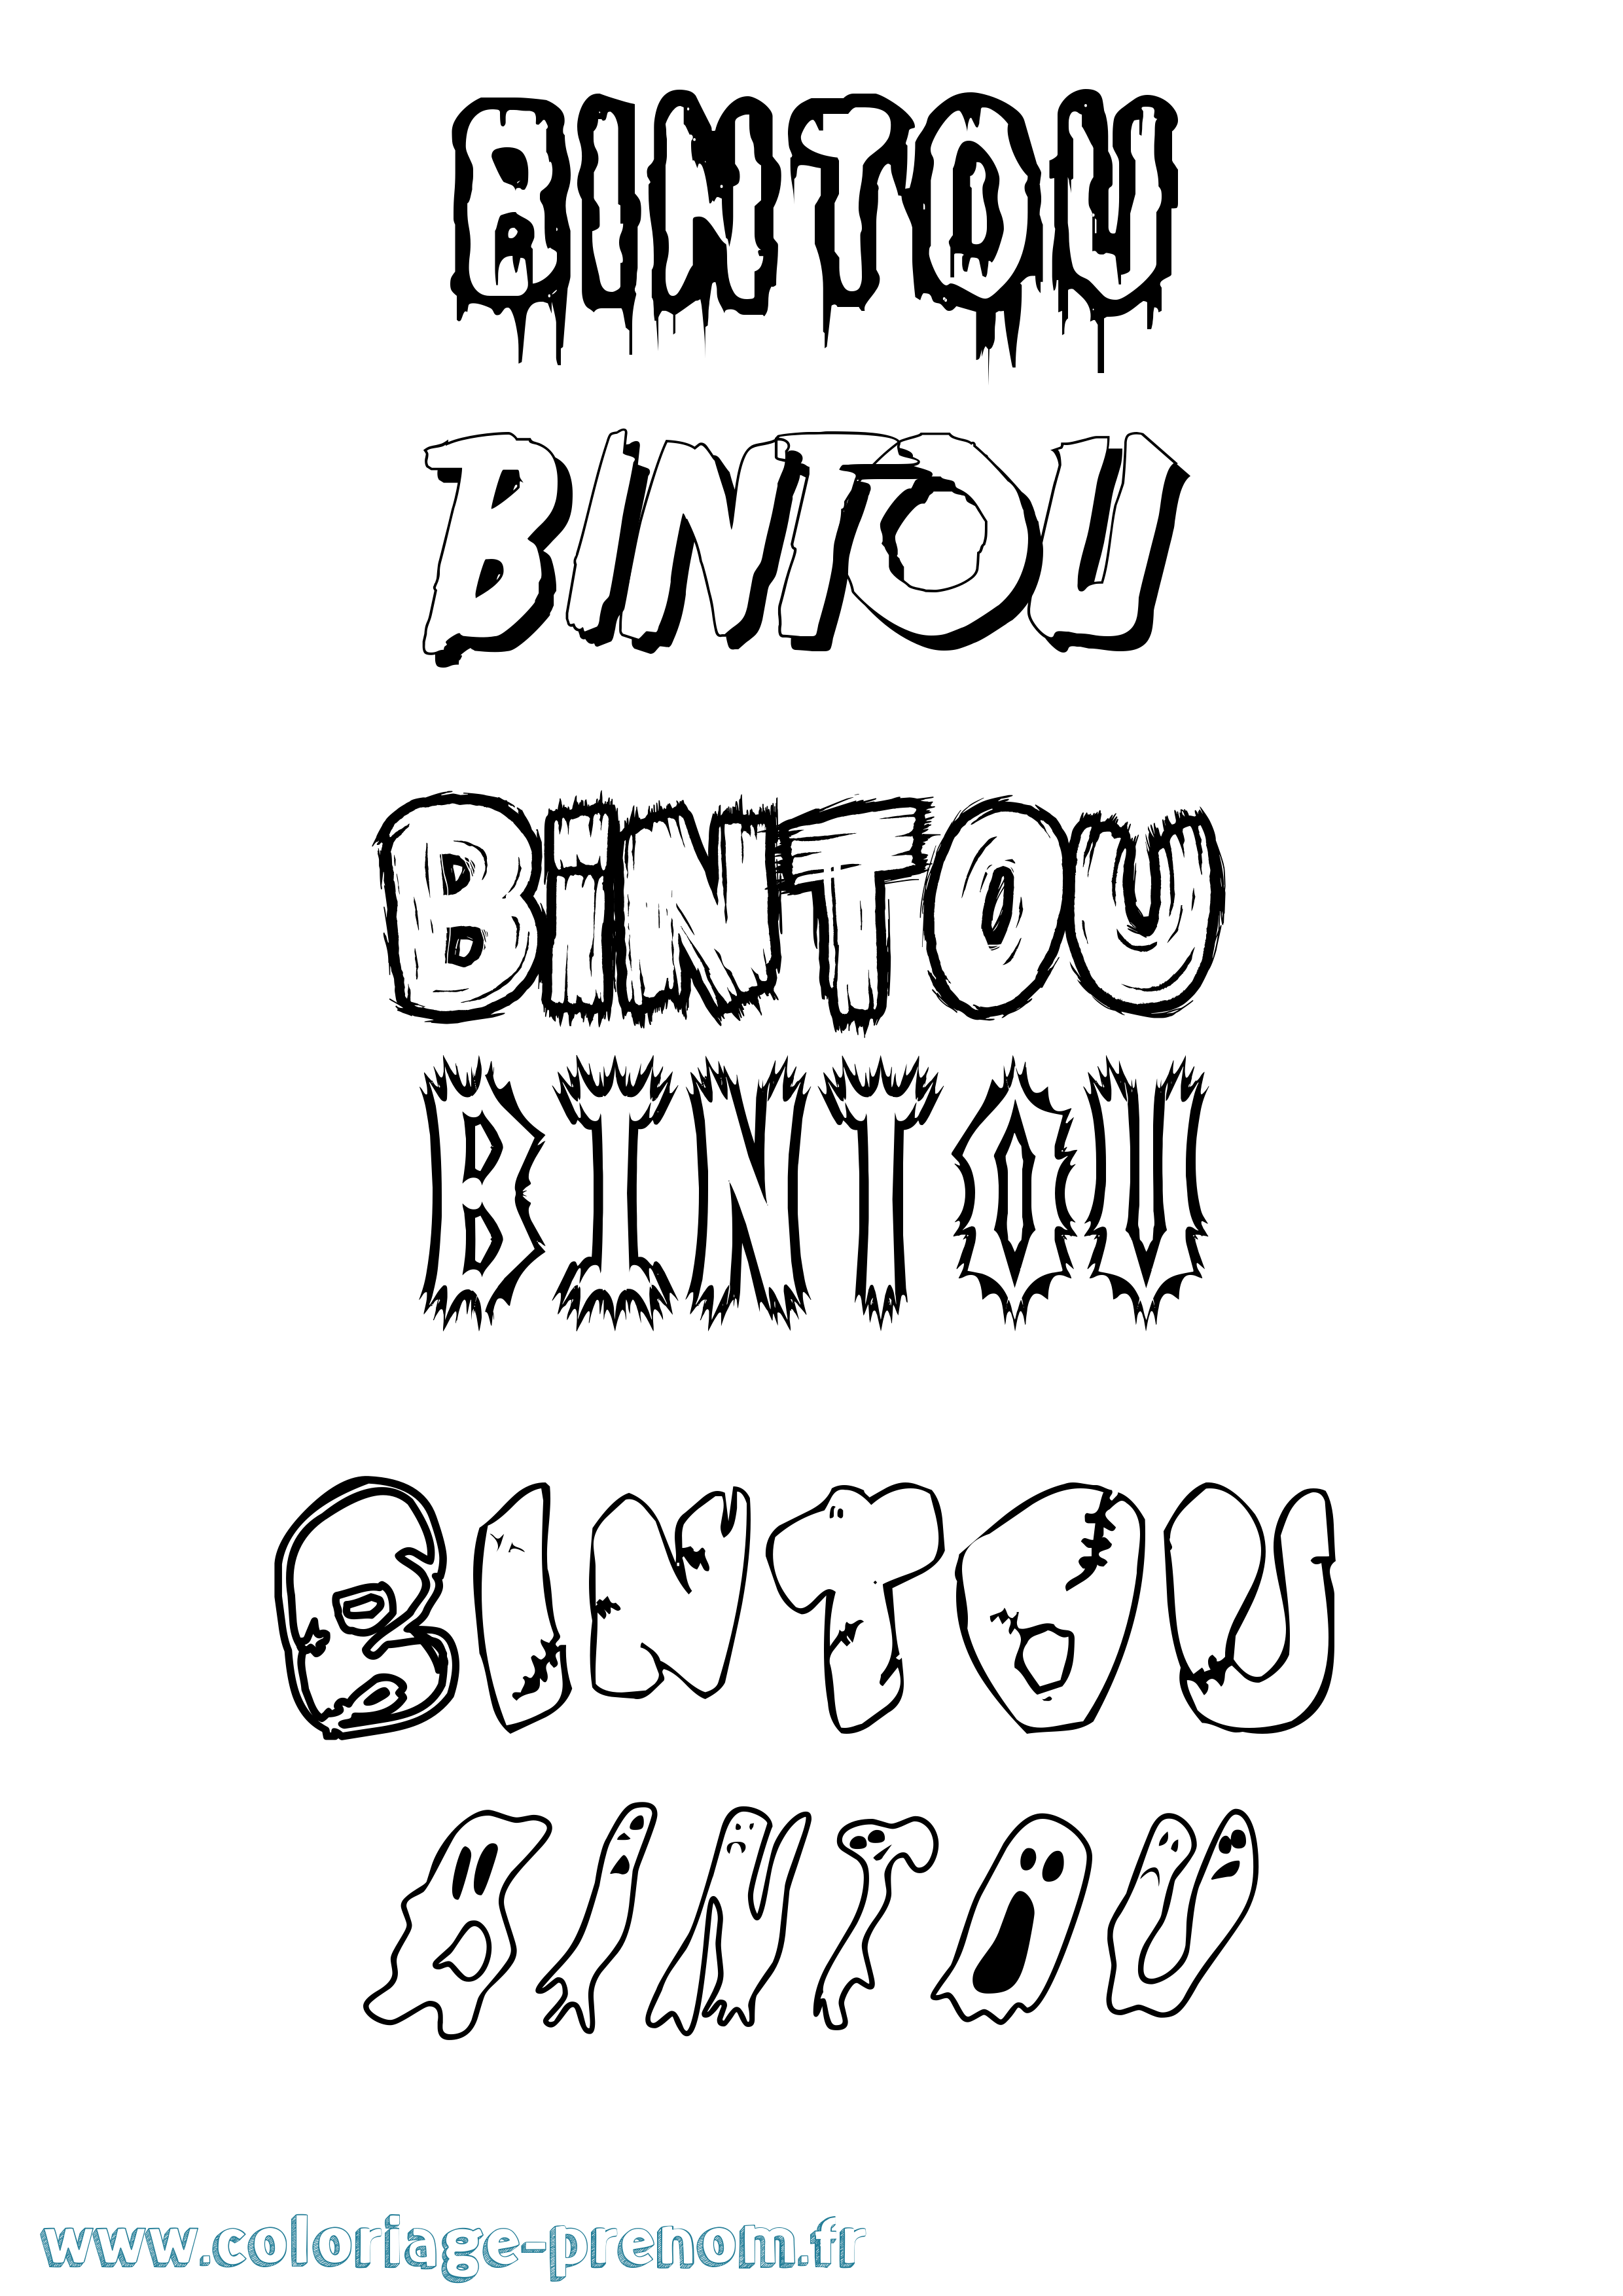 Coloriage prénom Bintou Frisson